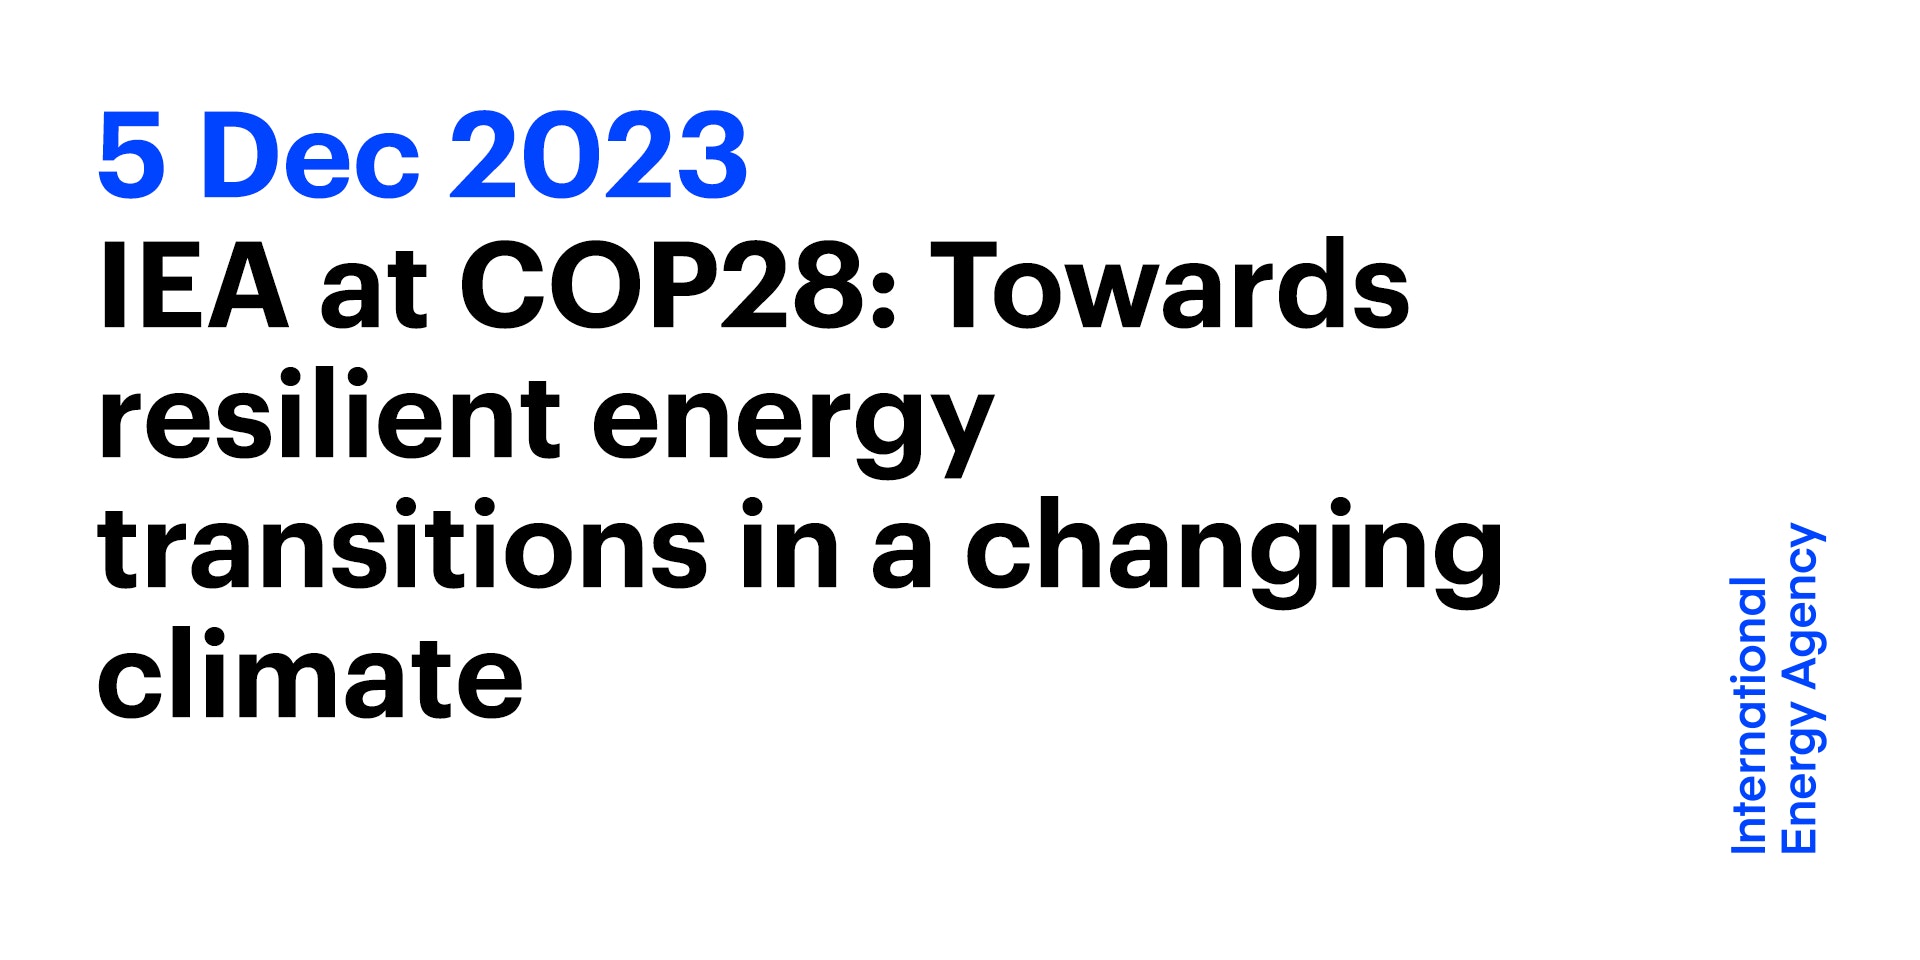 COP28, IRENA e Global Renewables Alliance traçam roteiro para